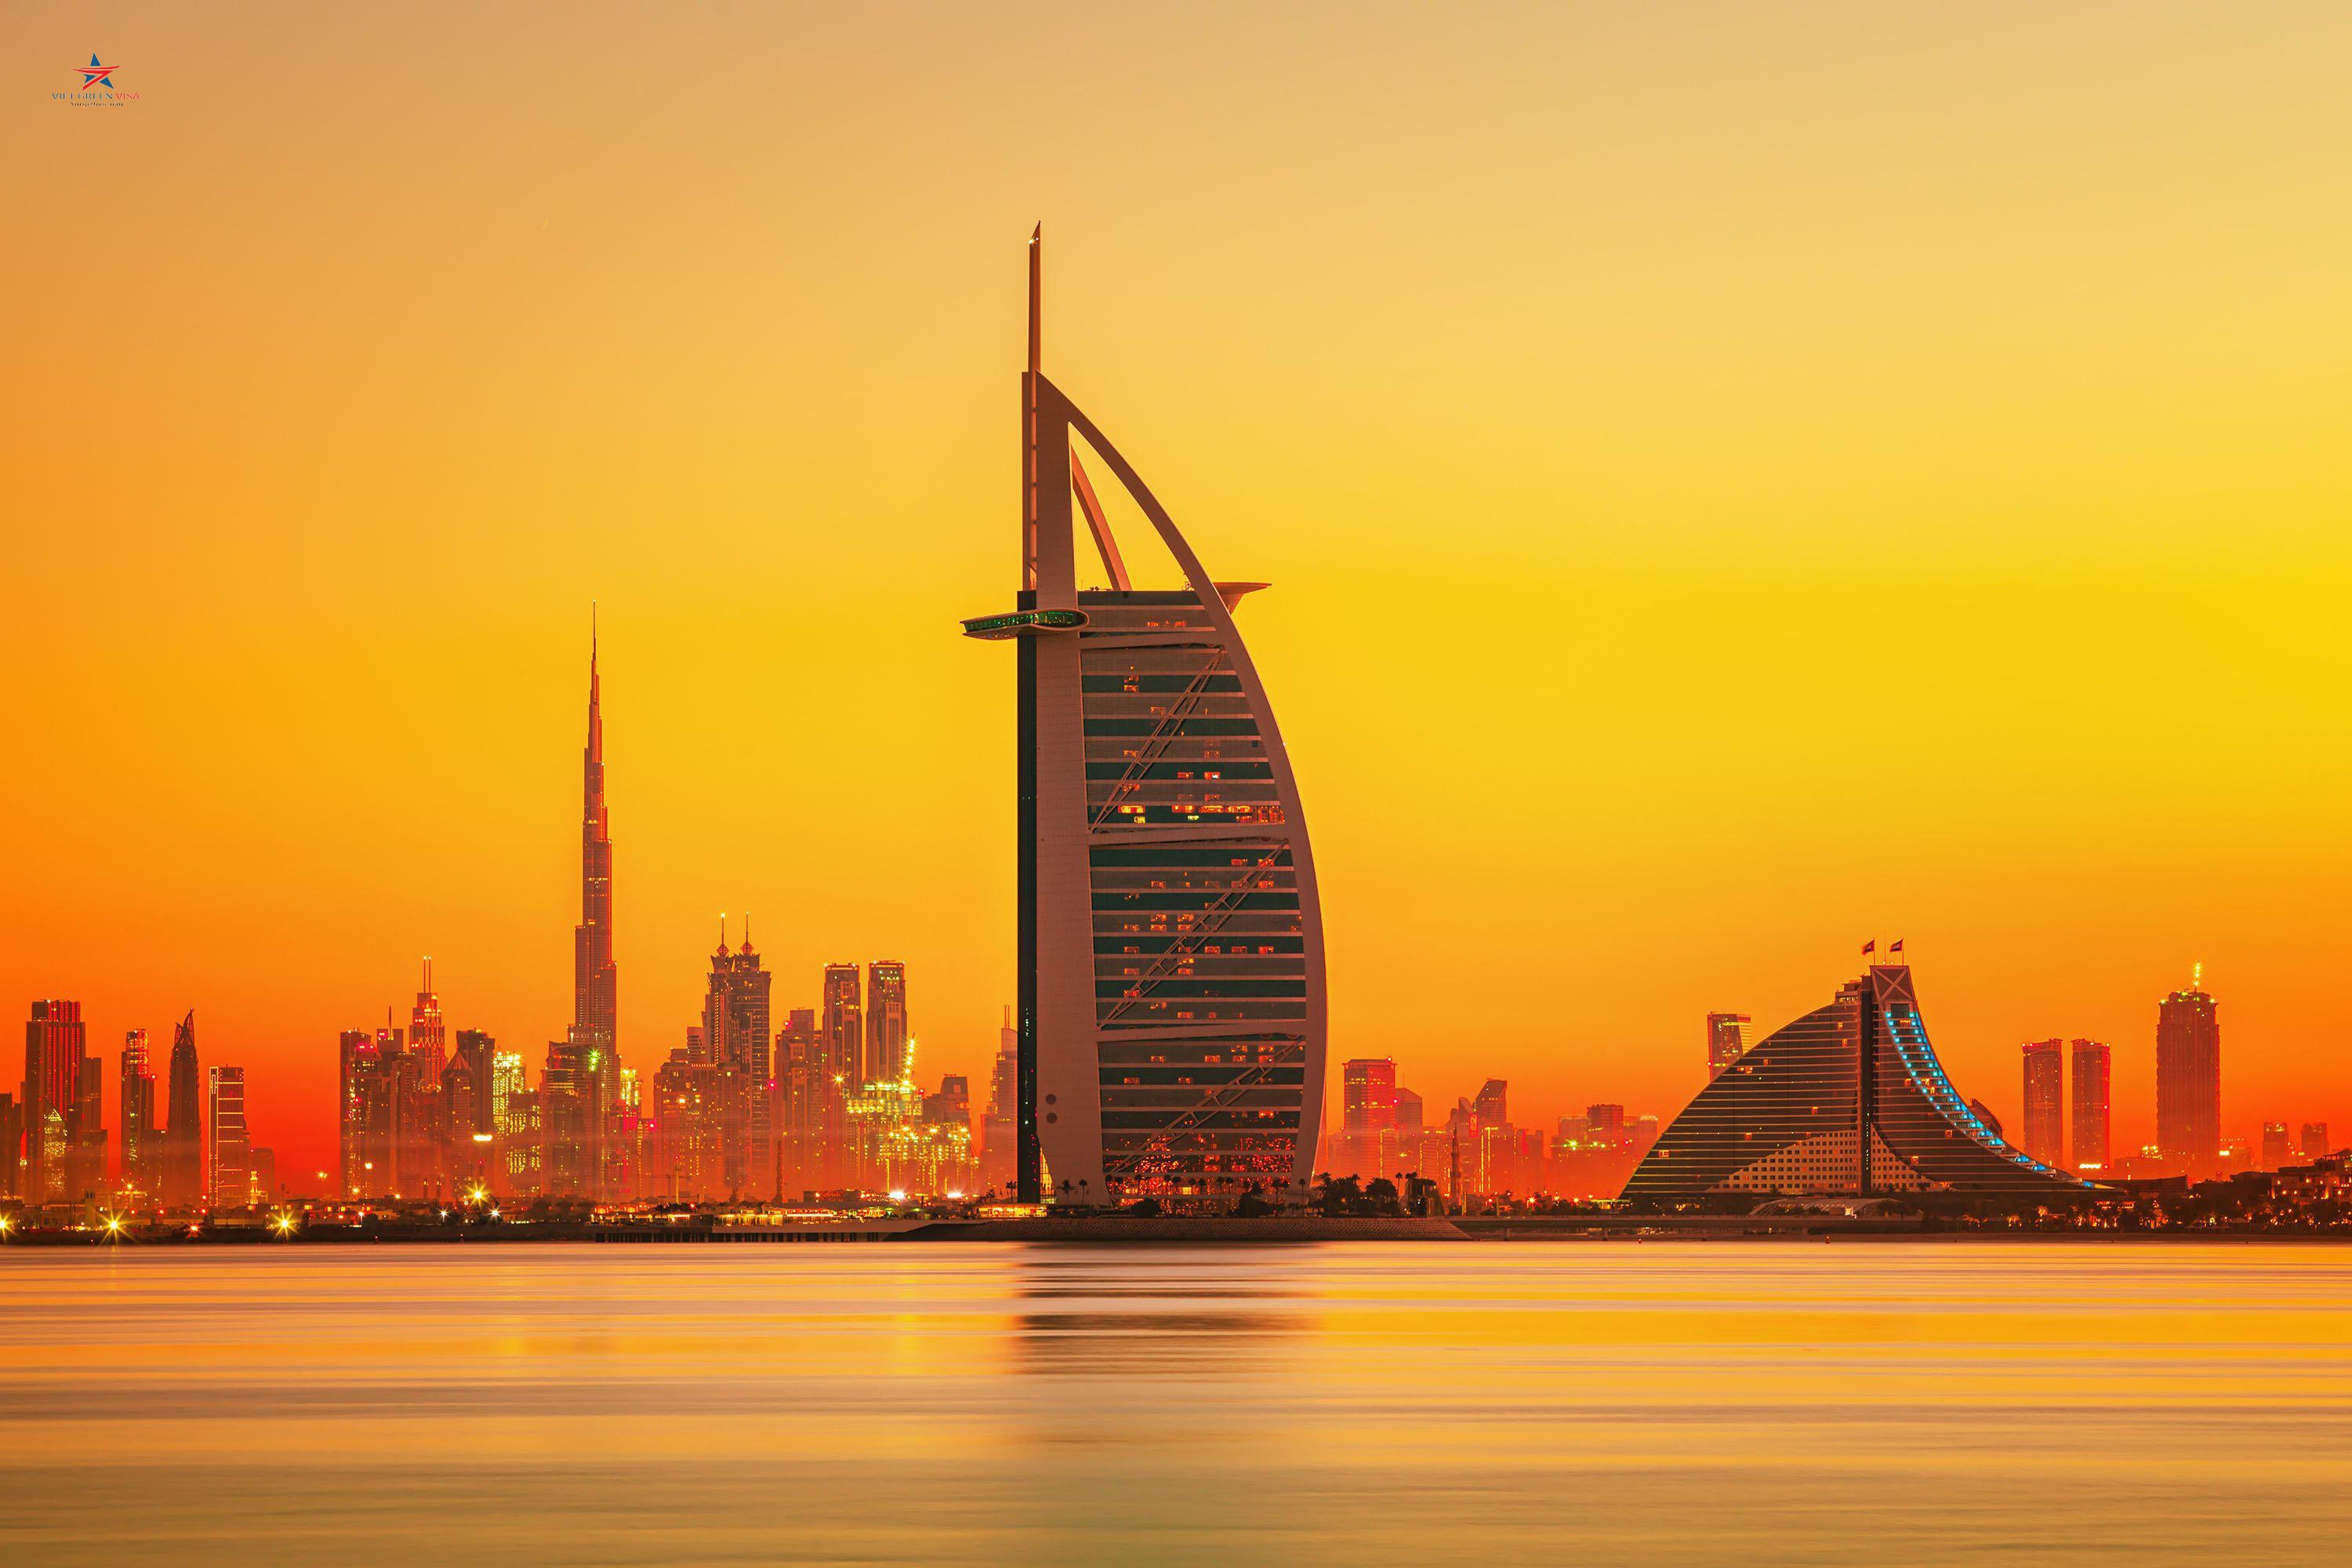 Bảo hiểm du lịch Dubai xin visa Dubai chất lượng 